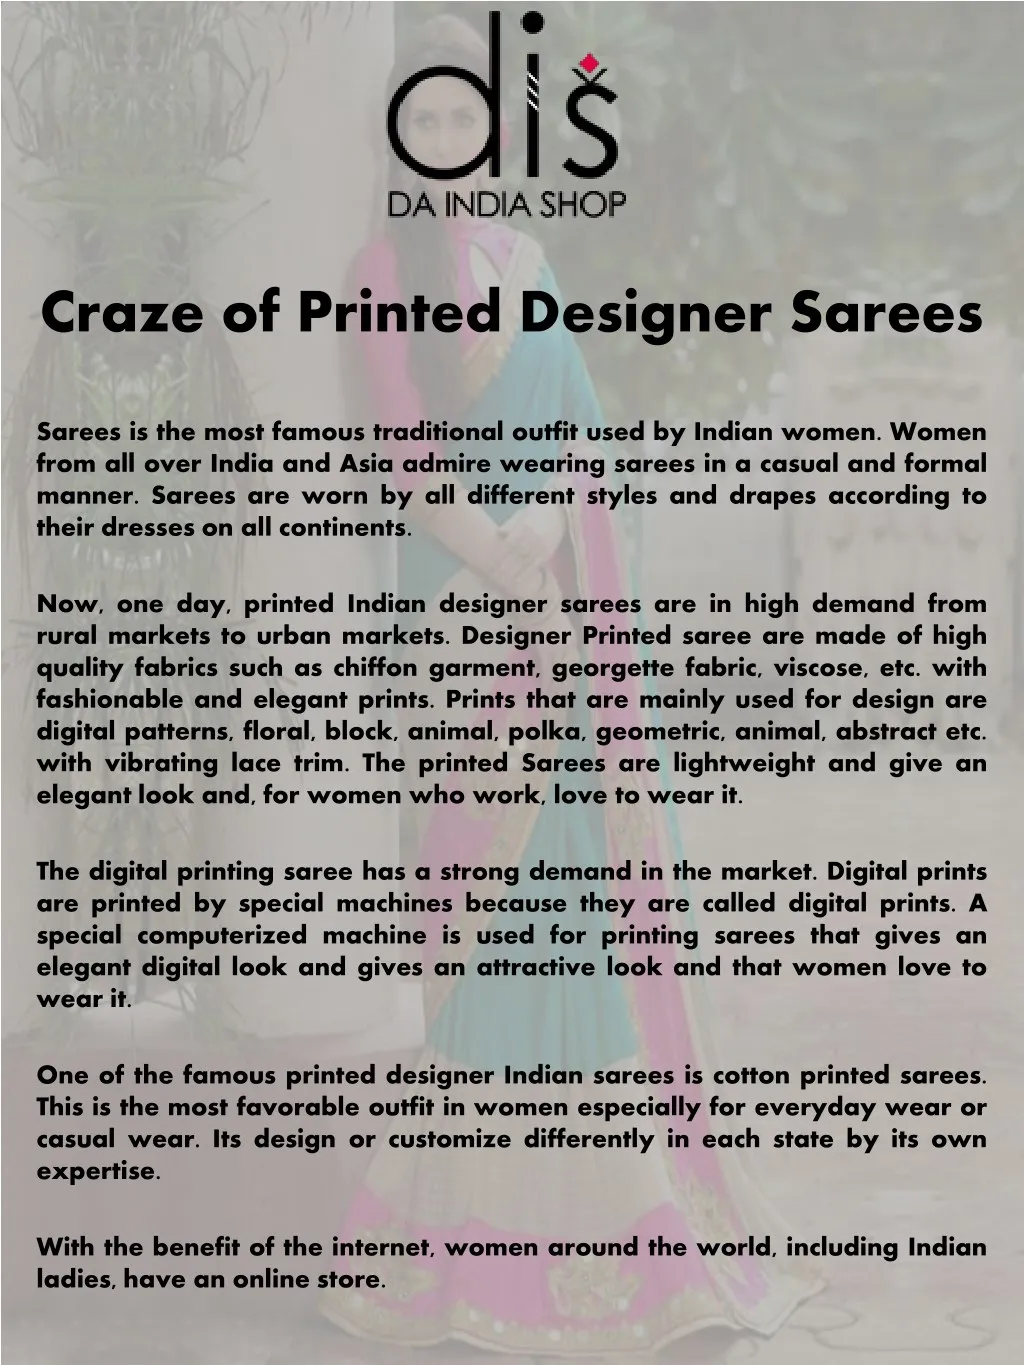 craze of printed designer sarees